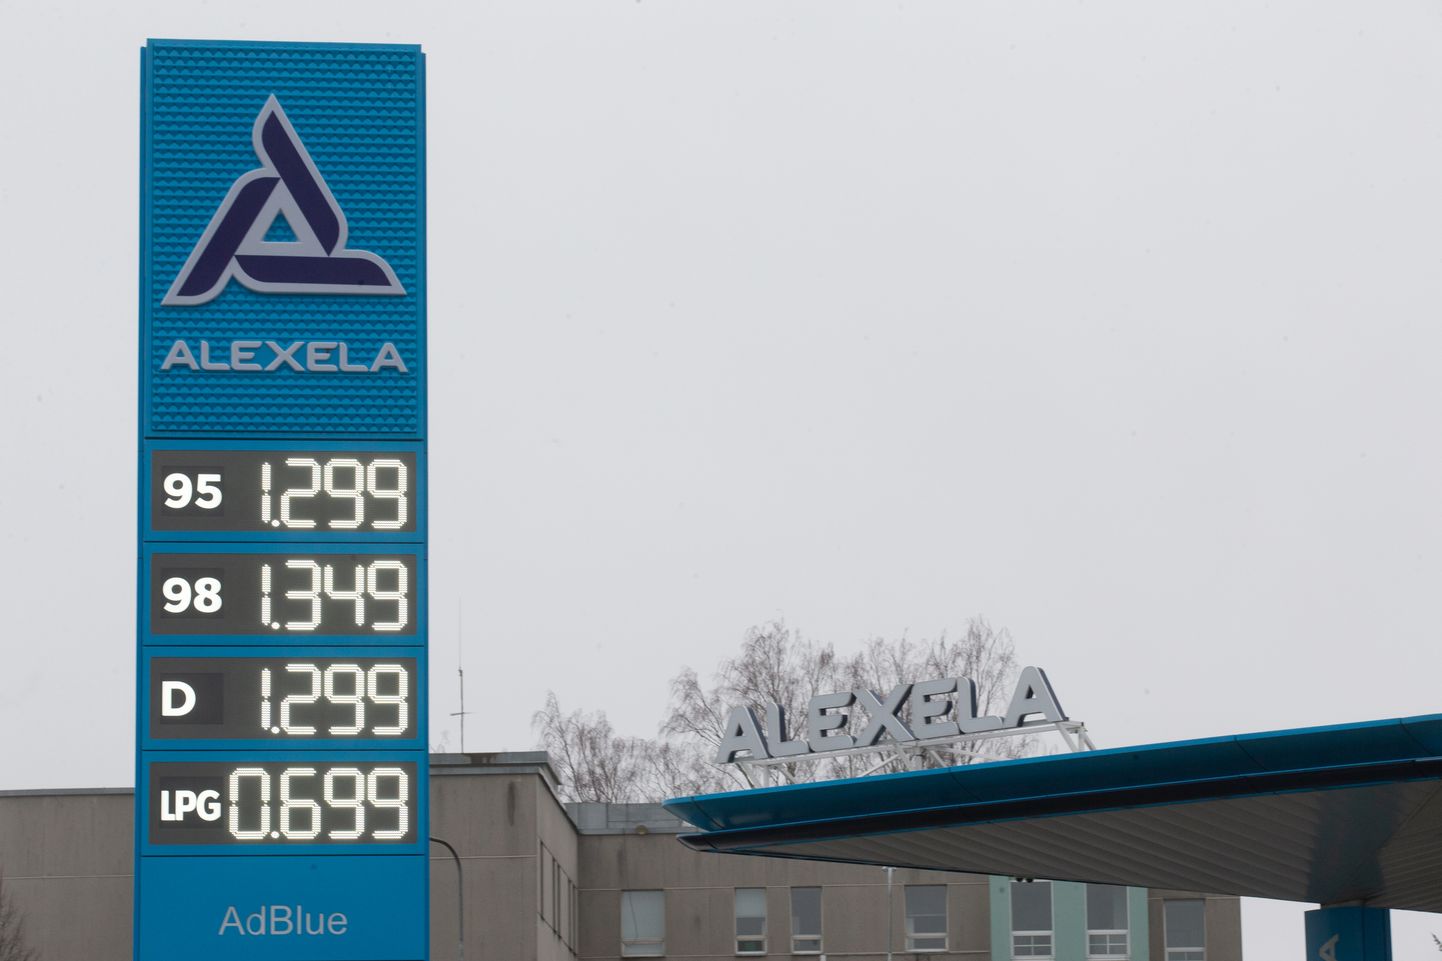 Täna hommikul olid tanklates langenud kütusehinnad 1,299 euroni.
Pildil Alexela tankla Tartus Lõunakeskuse juures.